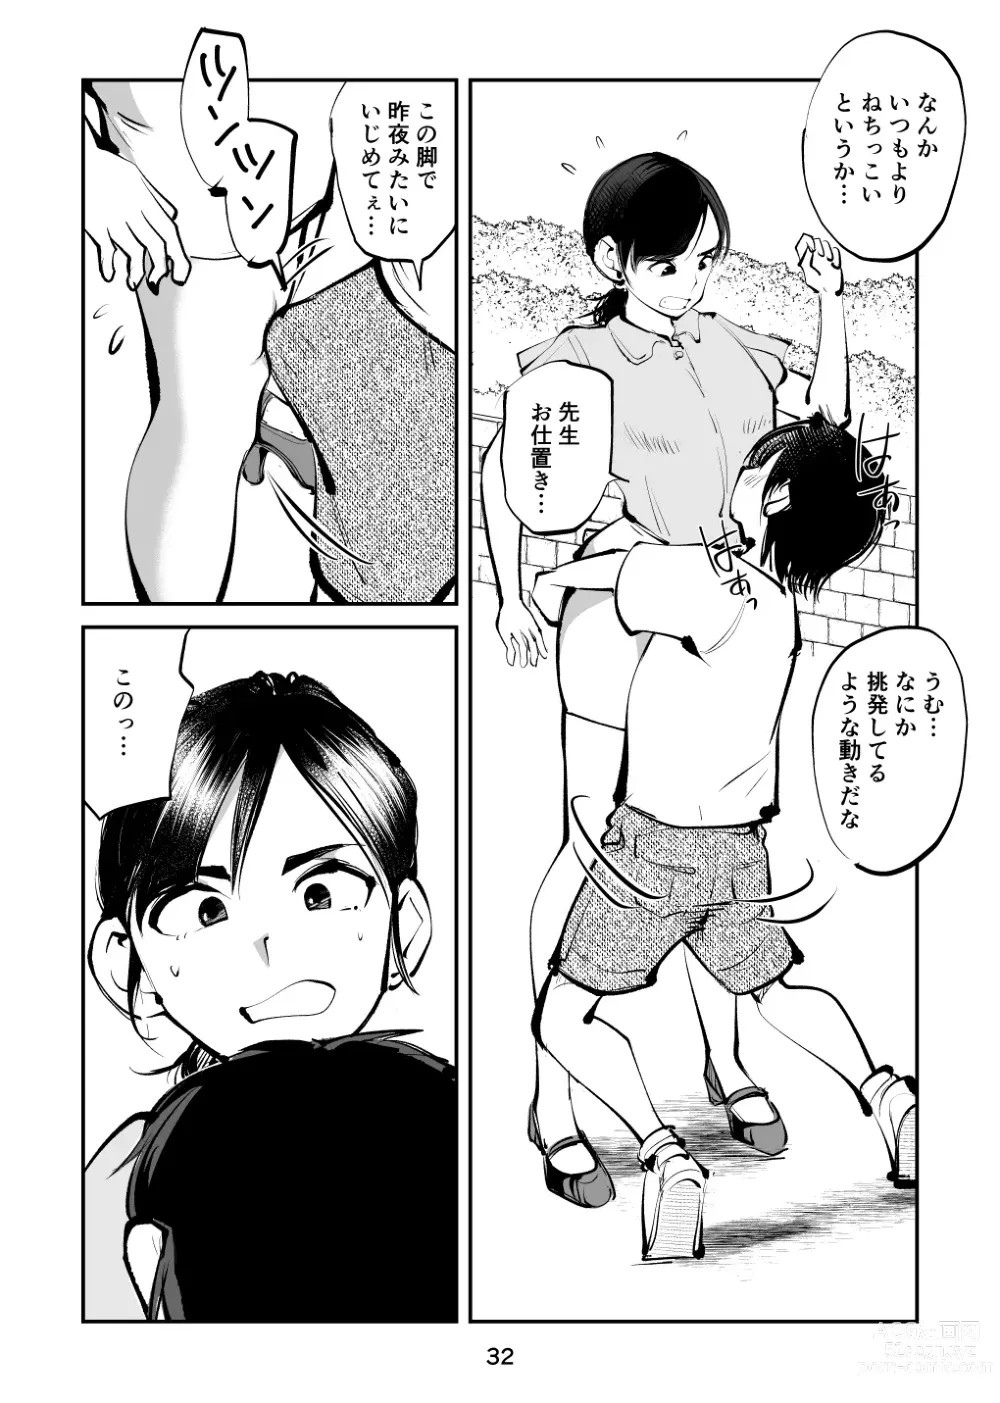 Page 32 of doujinshi Chinpo Shiikukakari 5